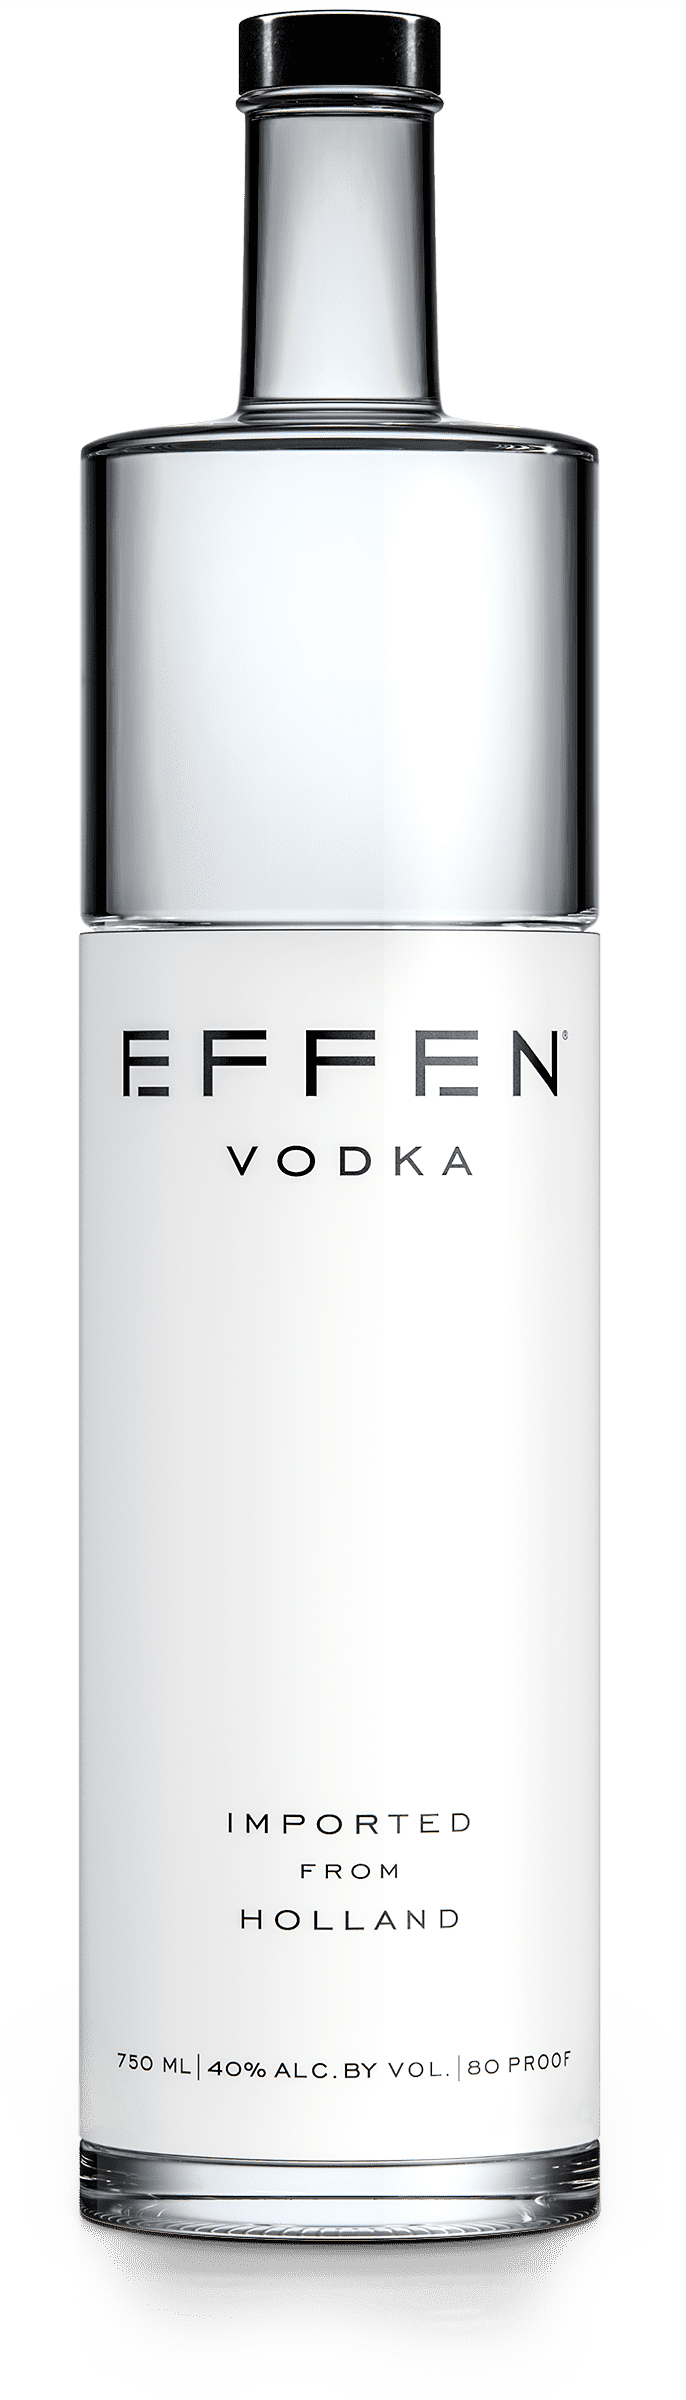 EFFEN VODKA Vodka BeverageWarehouse